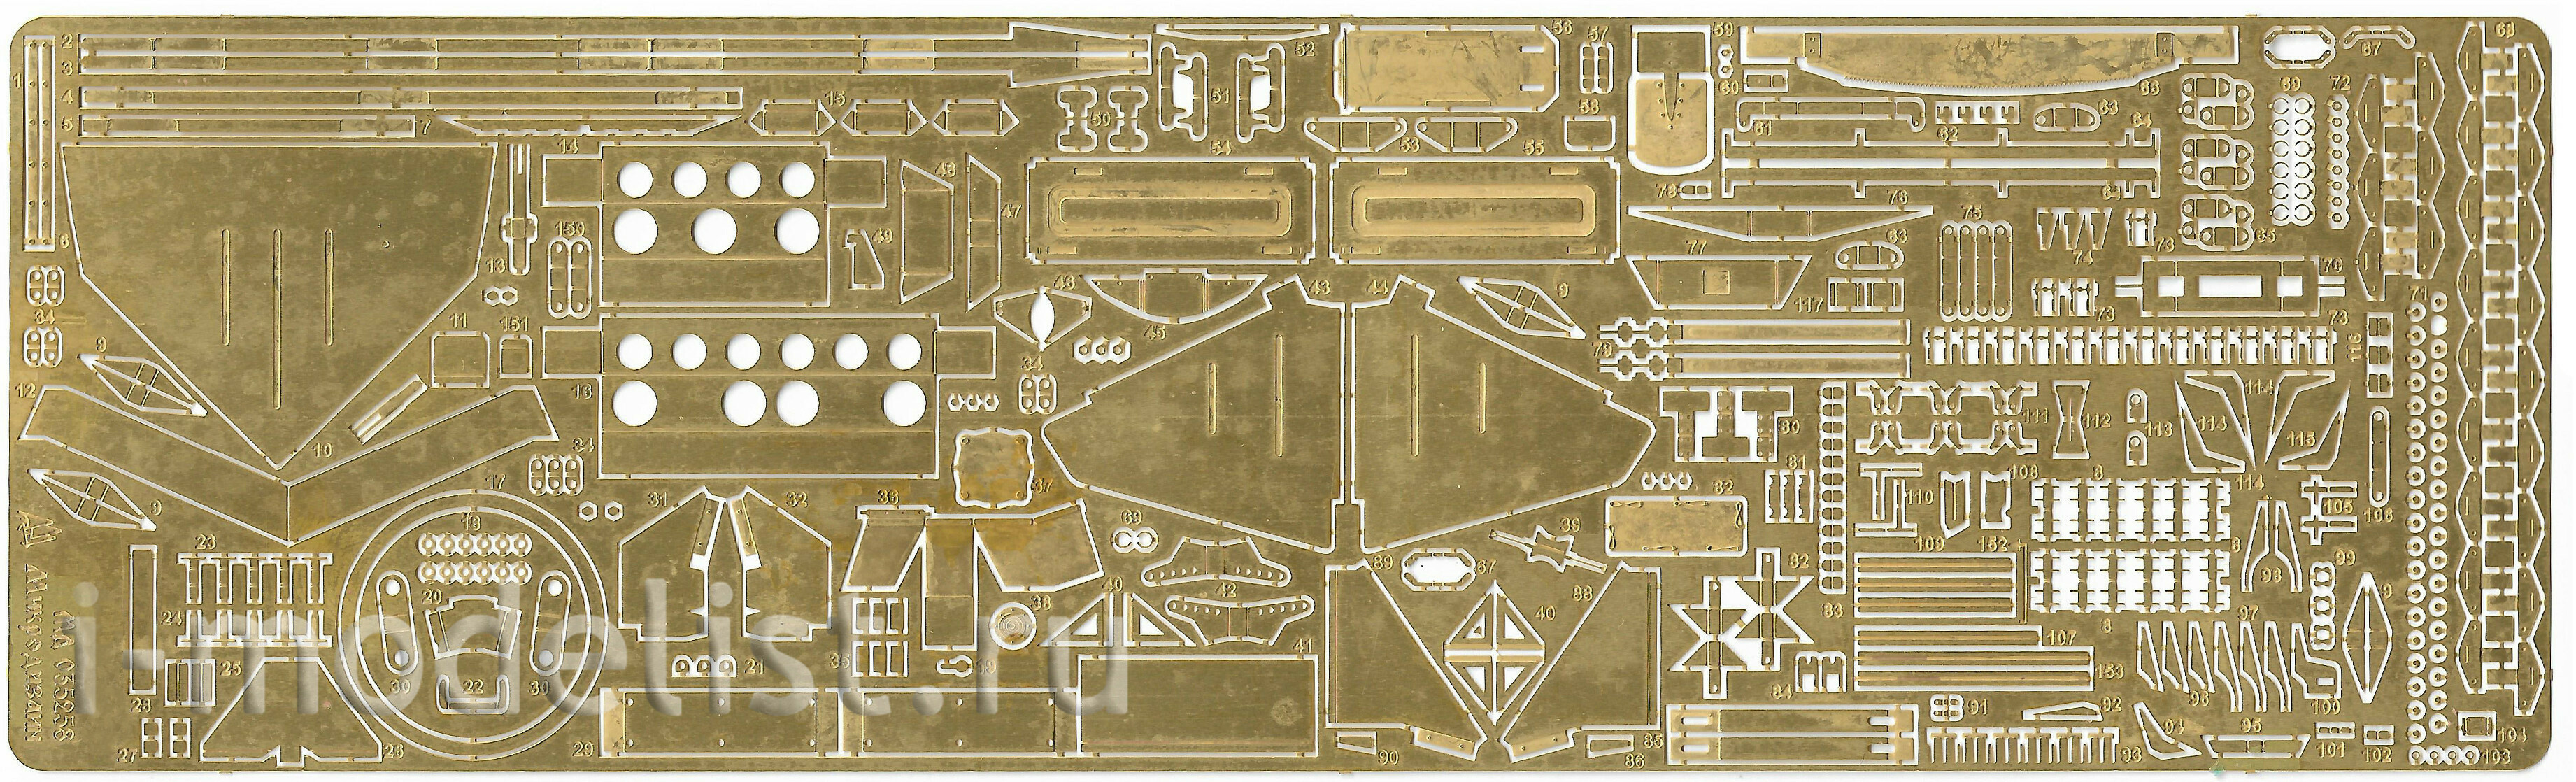 035258 Микродизайн 1/35 Основной набор фототравления для 2С19 152-мм самоходная дивизионная гаубица (Звезда)